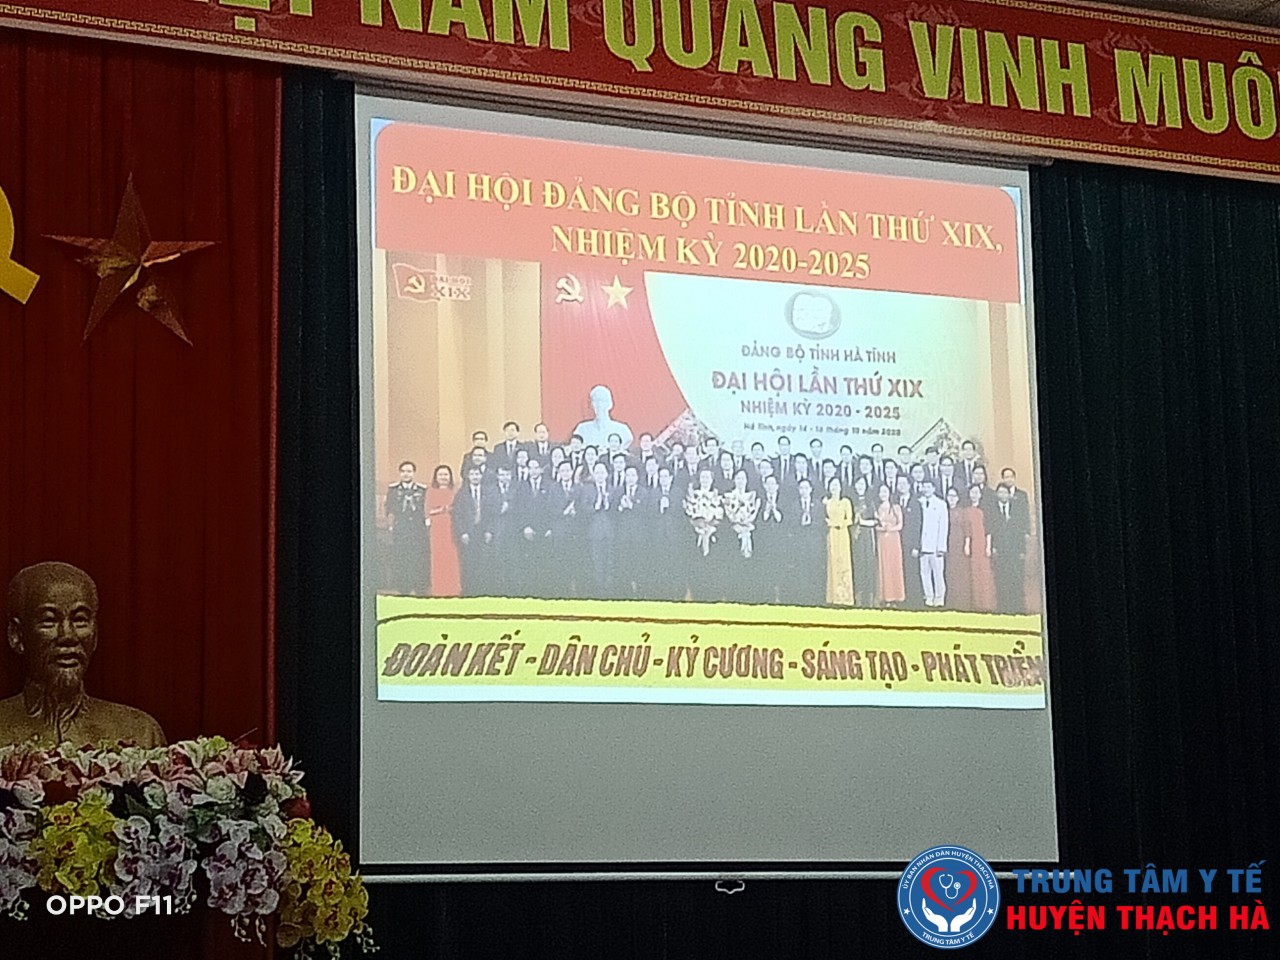 Đảng bộ Trung tâm Y tế huyện Thạch Hà tổ chức Hội nghị học tập, quán triệt nghị quyết Đại hội Đảng bộ tỉnh Hà Tĩnh lần thứ XIX